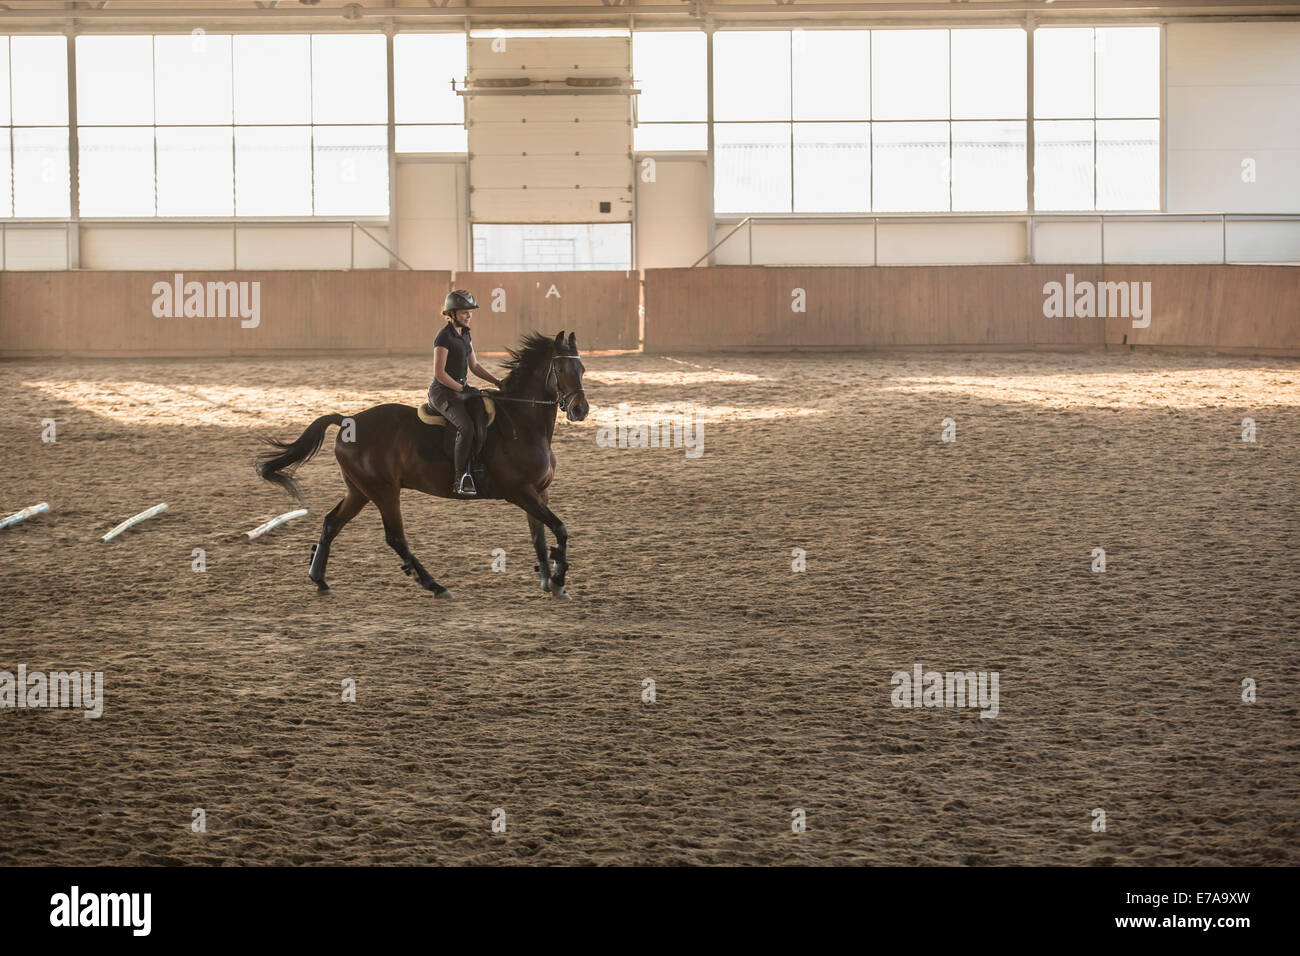 Woman riding horse stable dans la formation Banque D'Images